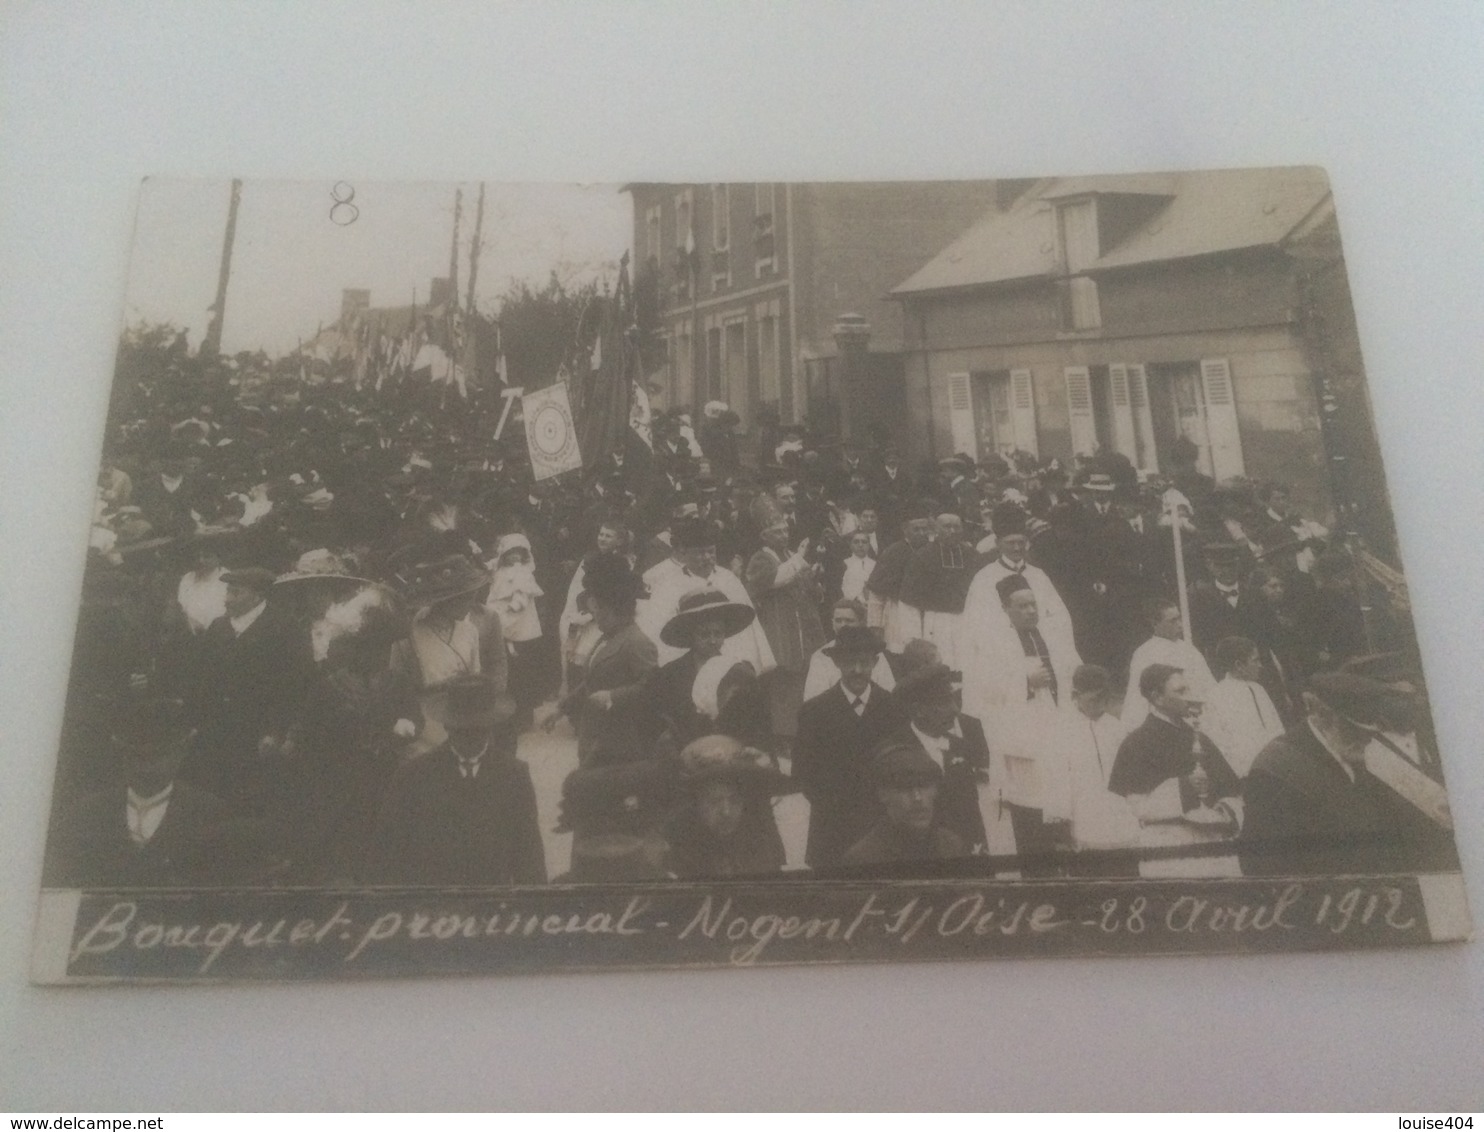 BB - 200 - NOGENT-sur-OISE - Fête Du Bouquet Provincial -28 Avril 1912 - Tir à L'Arc